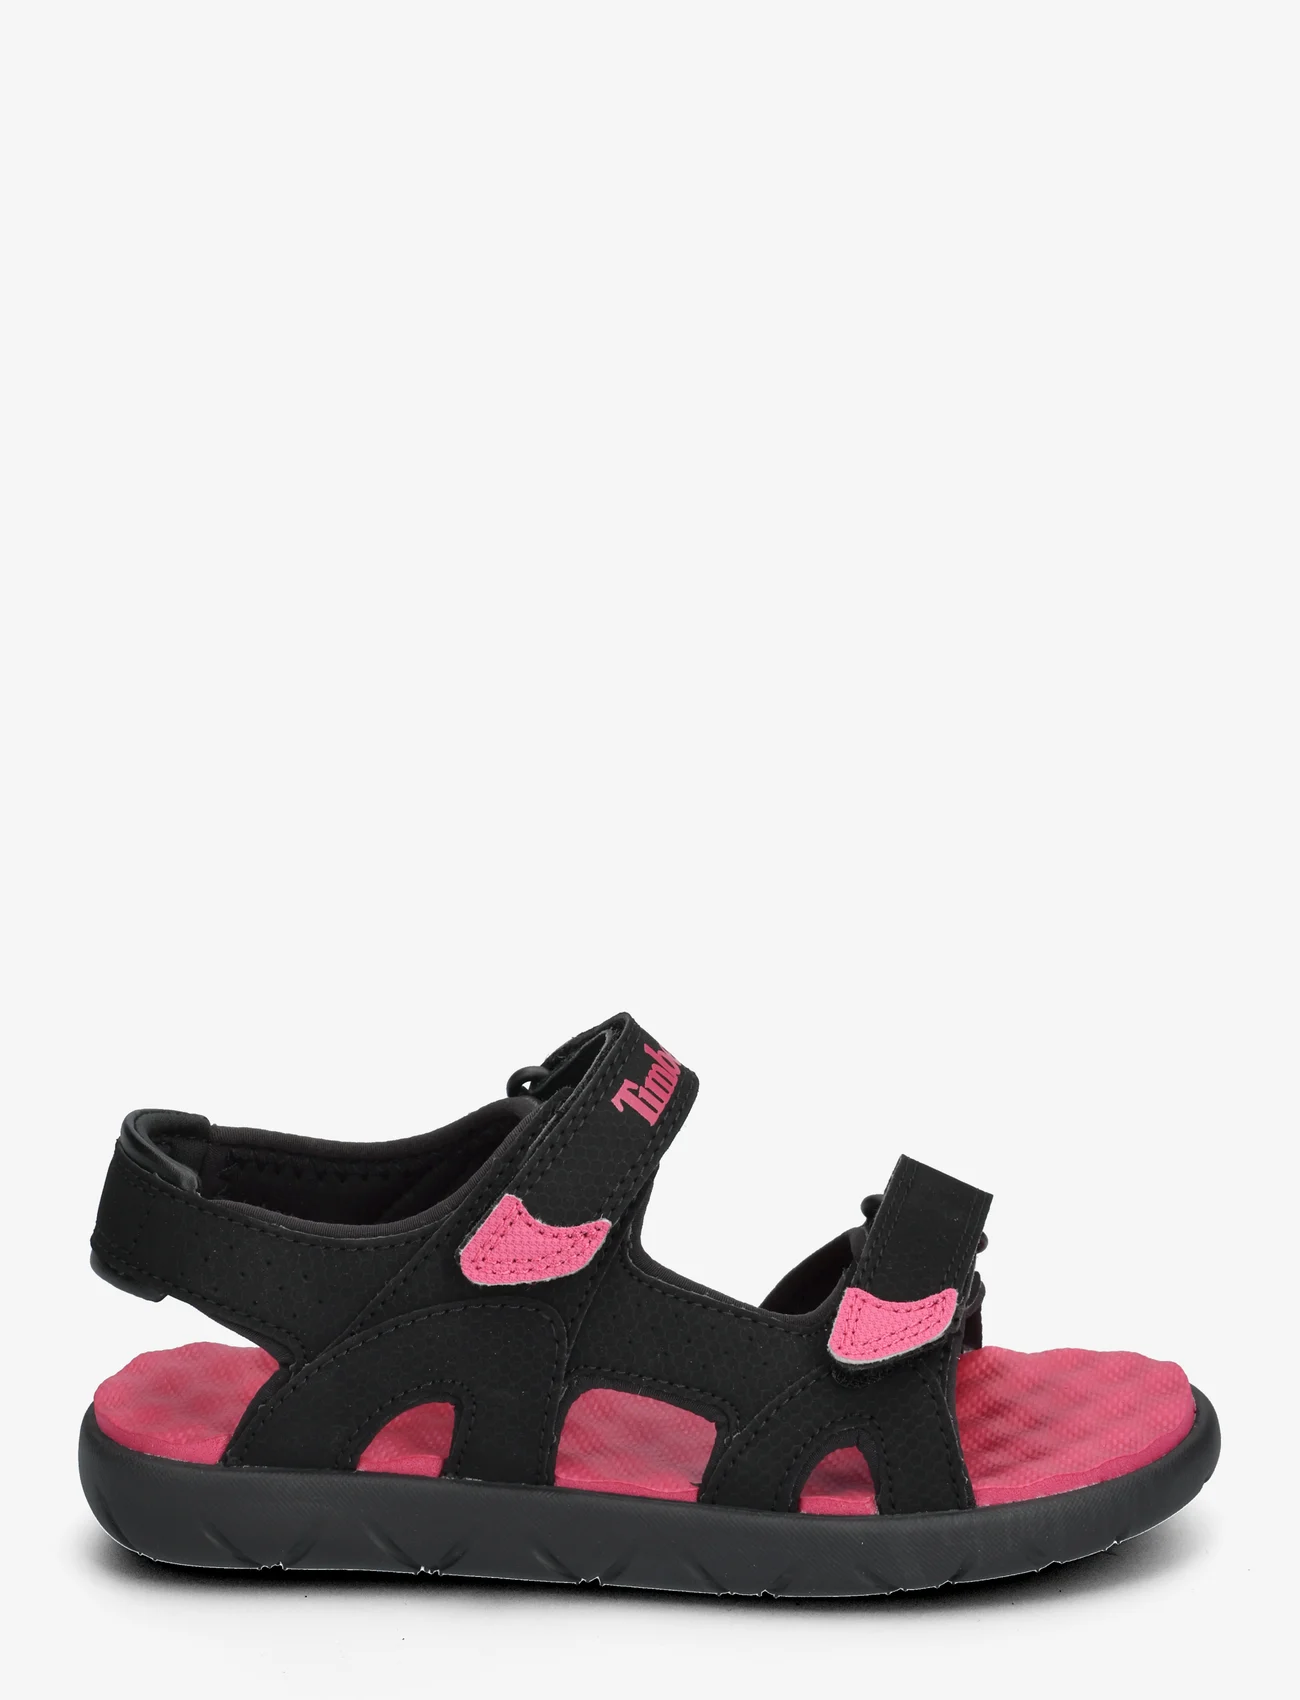 Timberland - Perkins Row BACKSTRAP SANDAL BLACK W BRIGHT PINK - zomerkoopjes - black w bright pink - 1